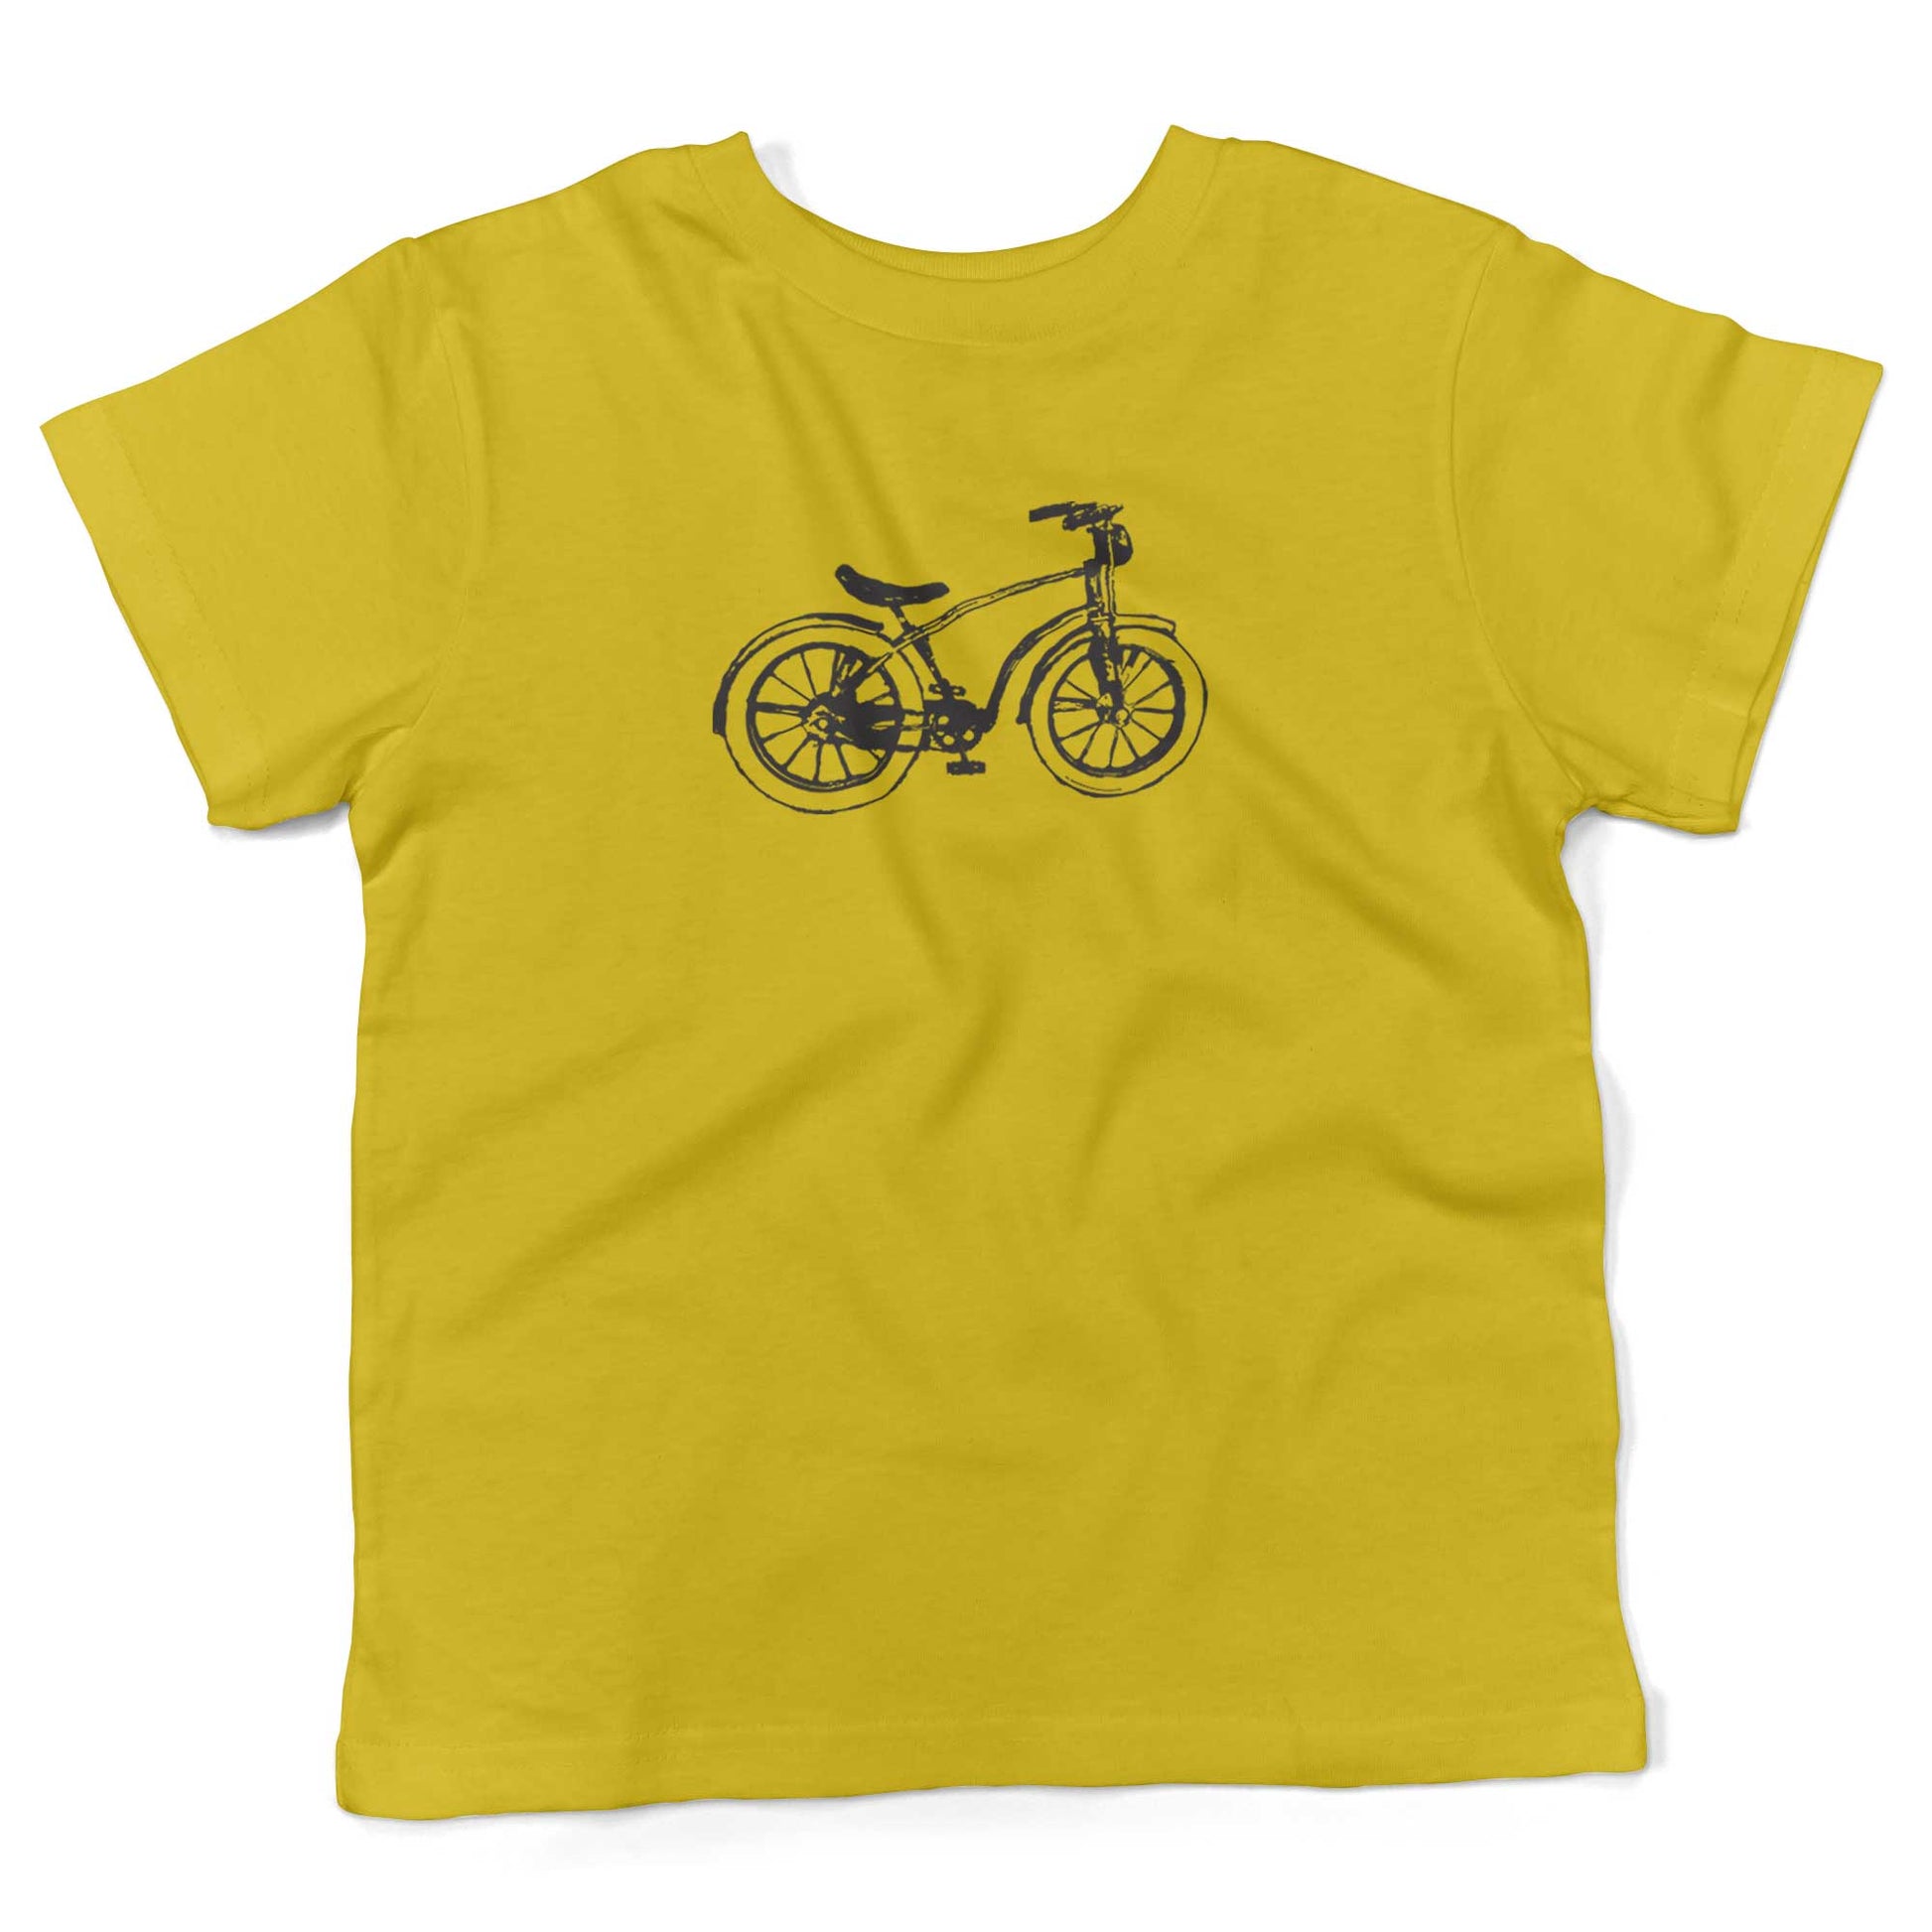 Vintage Bike Toddler Shirt-Sunshine Yellow-2T